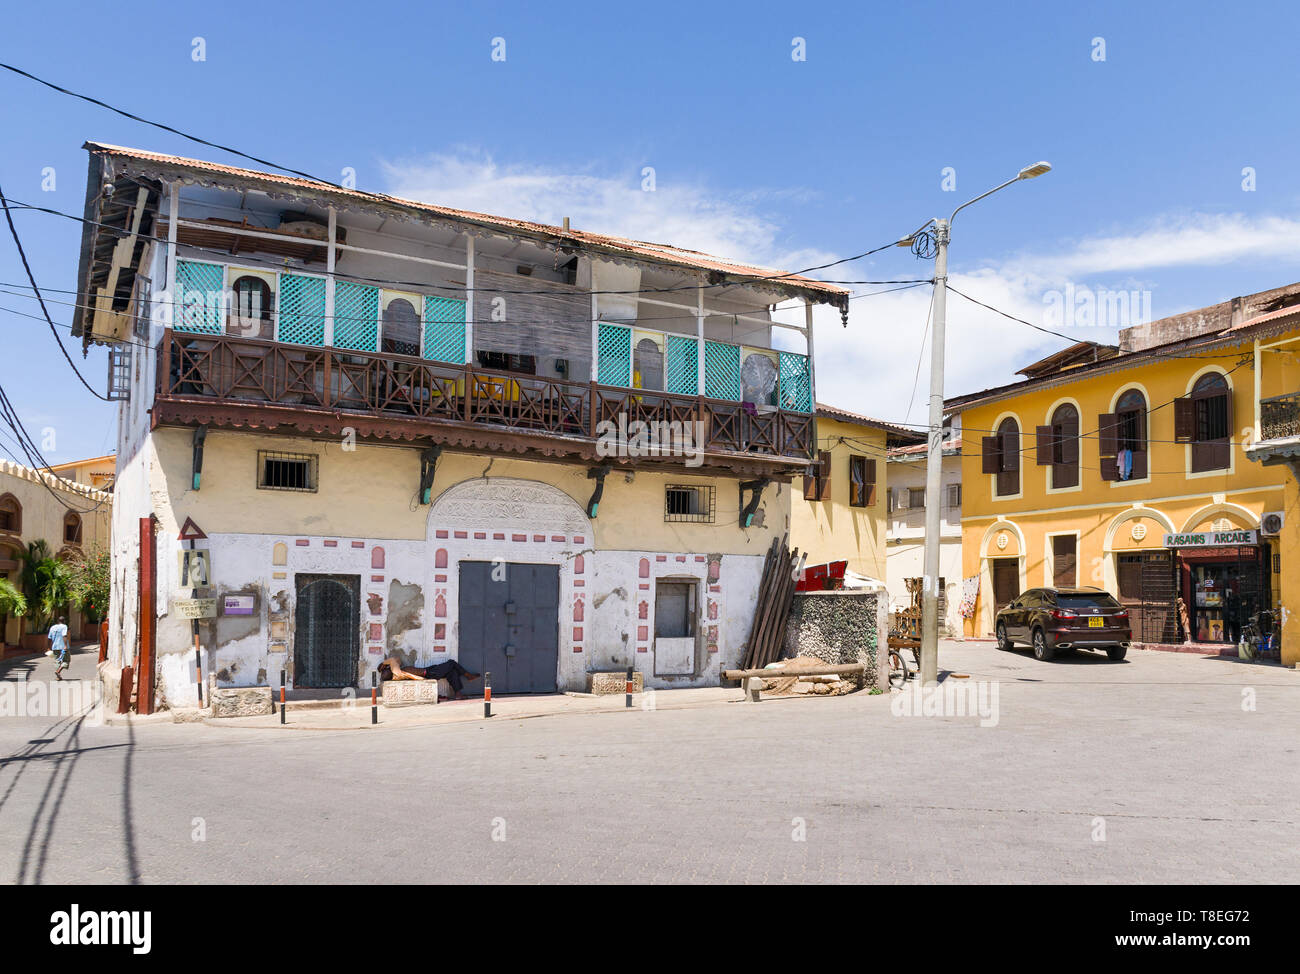 Le Old Post House extérieur de l'immeuble par un après-midi ensoleillé, la vieille ville de Mombasa, Kenya Banque D'Images